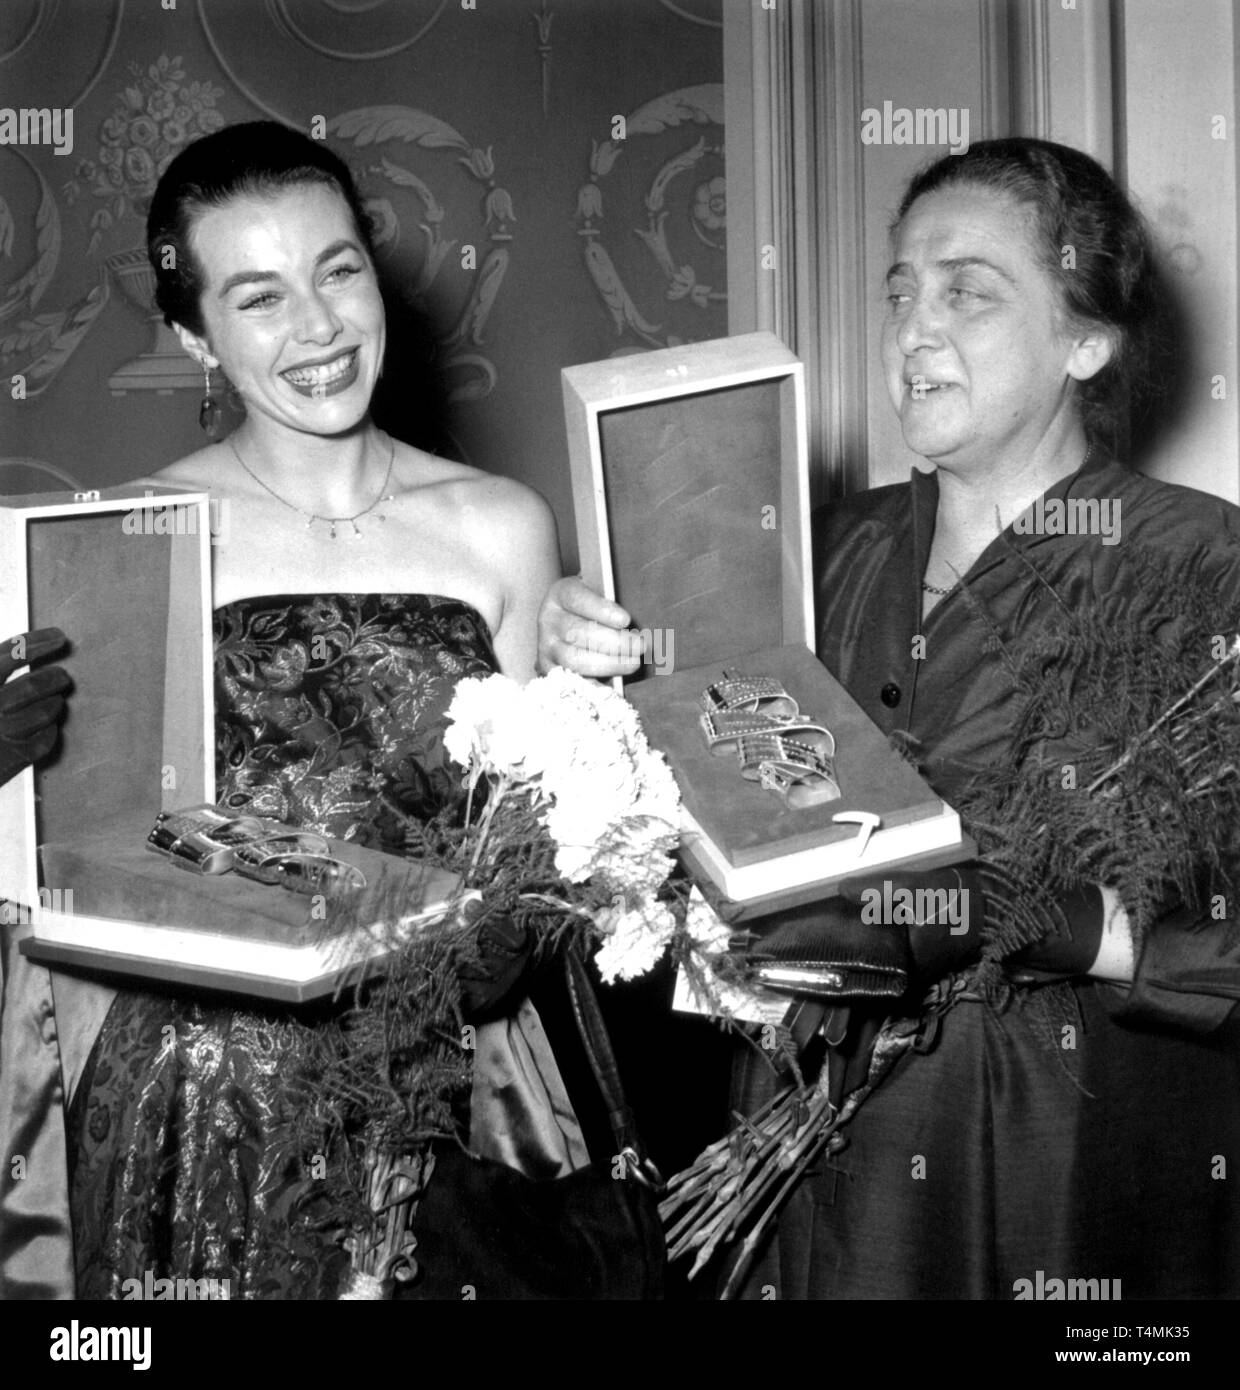 Marianne Koch (l) e Therese Giehse con il loro Film Awards durante la cerimonia a Berlino nel 1955. Marianne Koch ha ricevuto il 'Silver nastro' come migliore femmina attrice e Therese Giehse come protagonista. | Utilizzo di tutto il mondo Foto Stock